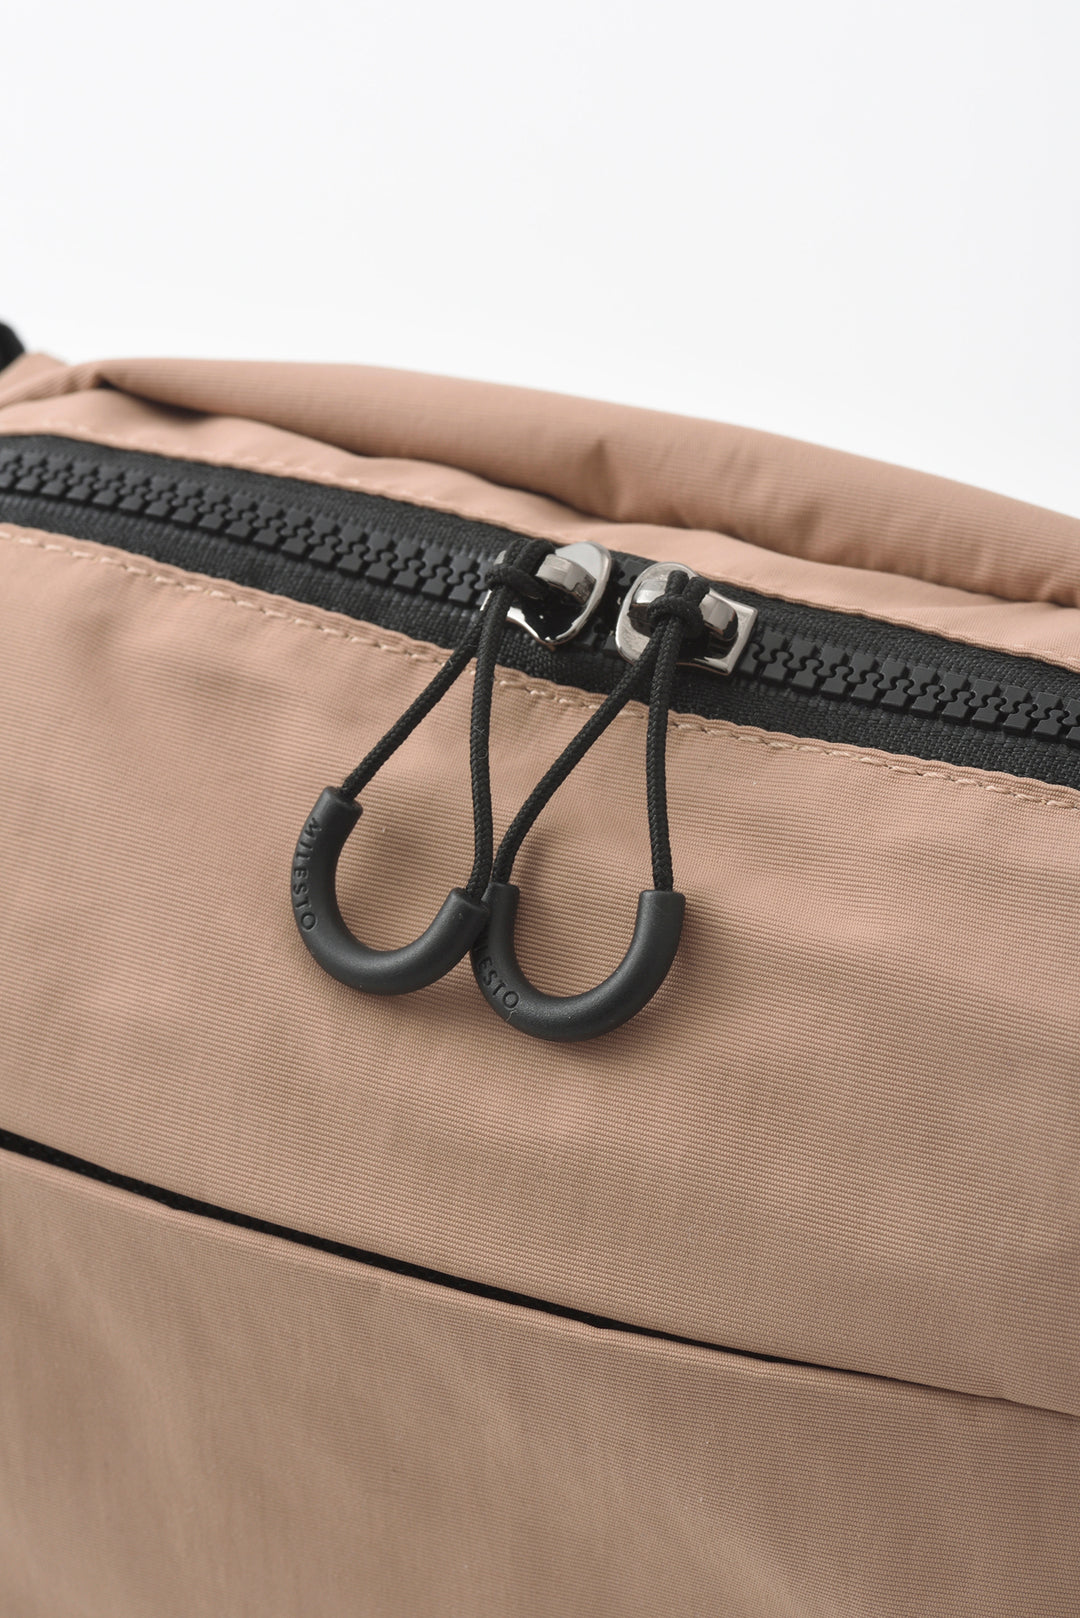 MILESTO TROT Shoulder Bag - Beige MLS879-BE